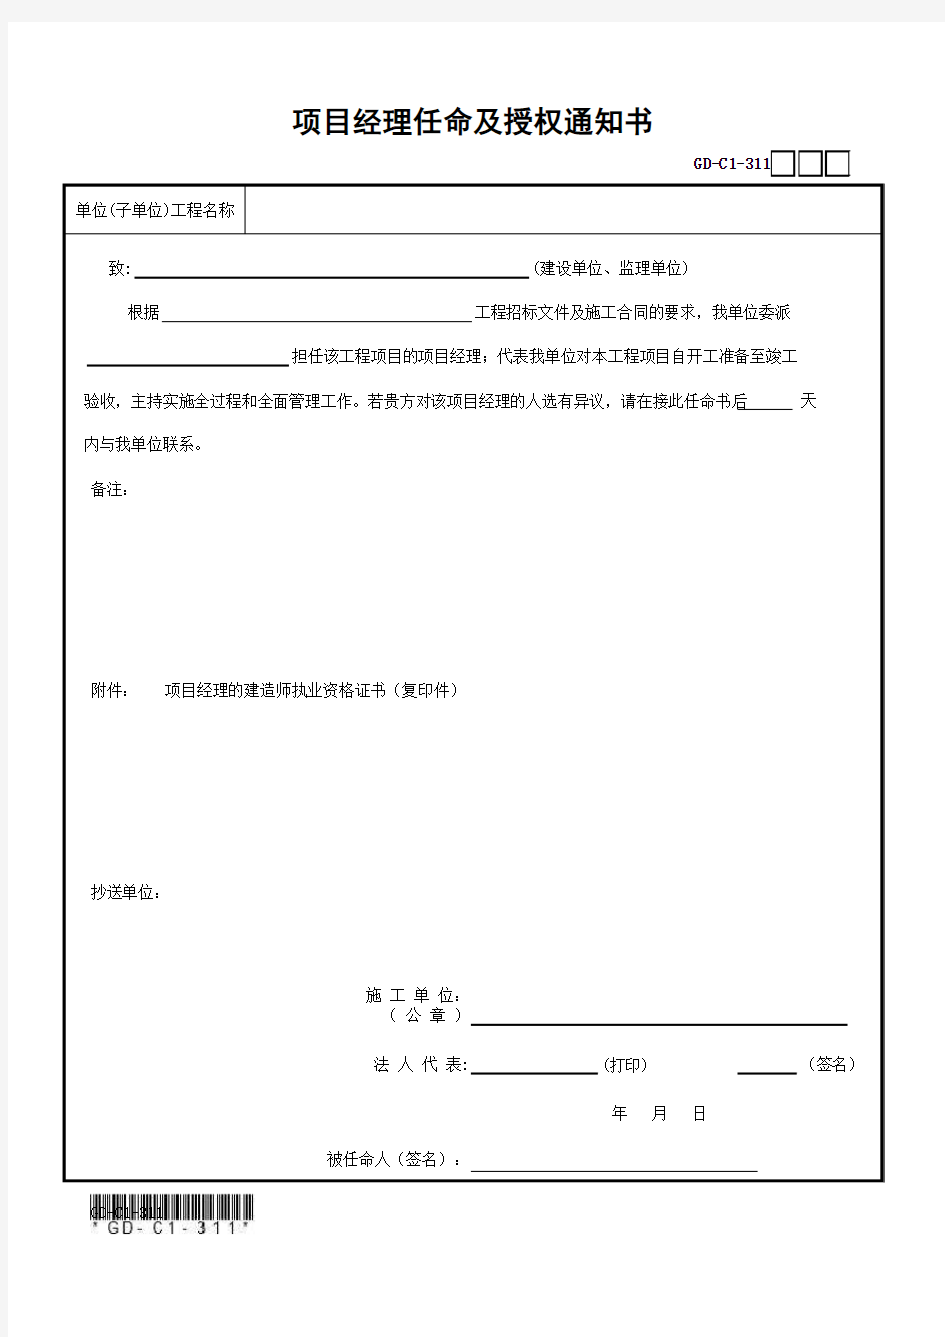 广东省统表(2016版)项目经理任命及授权通知书